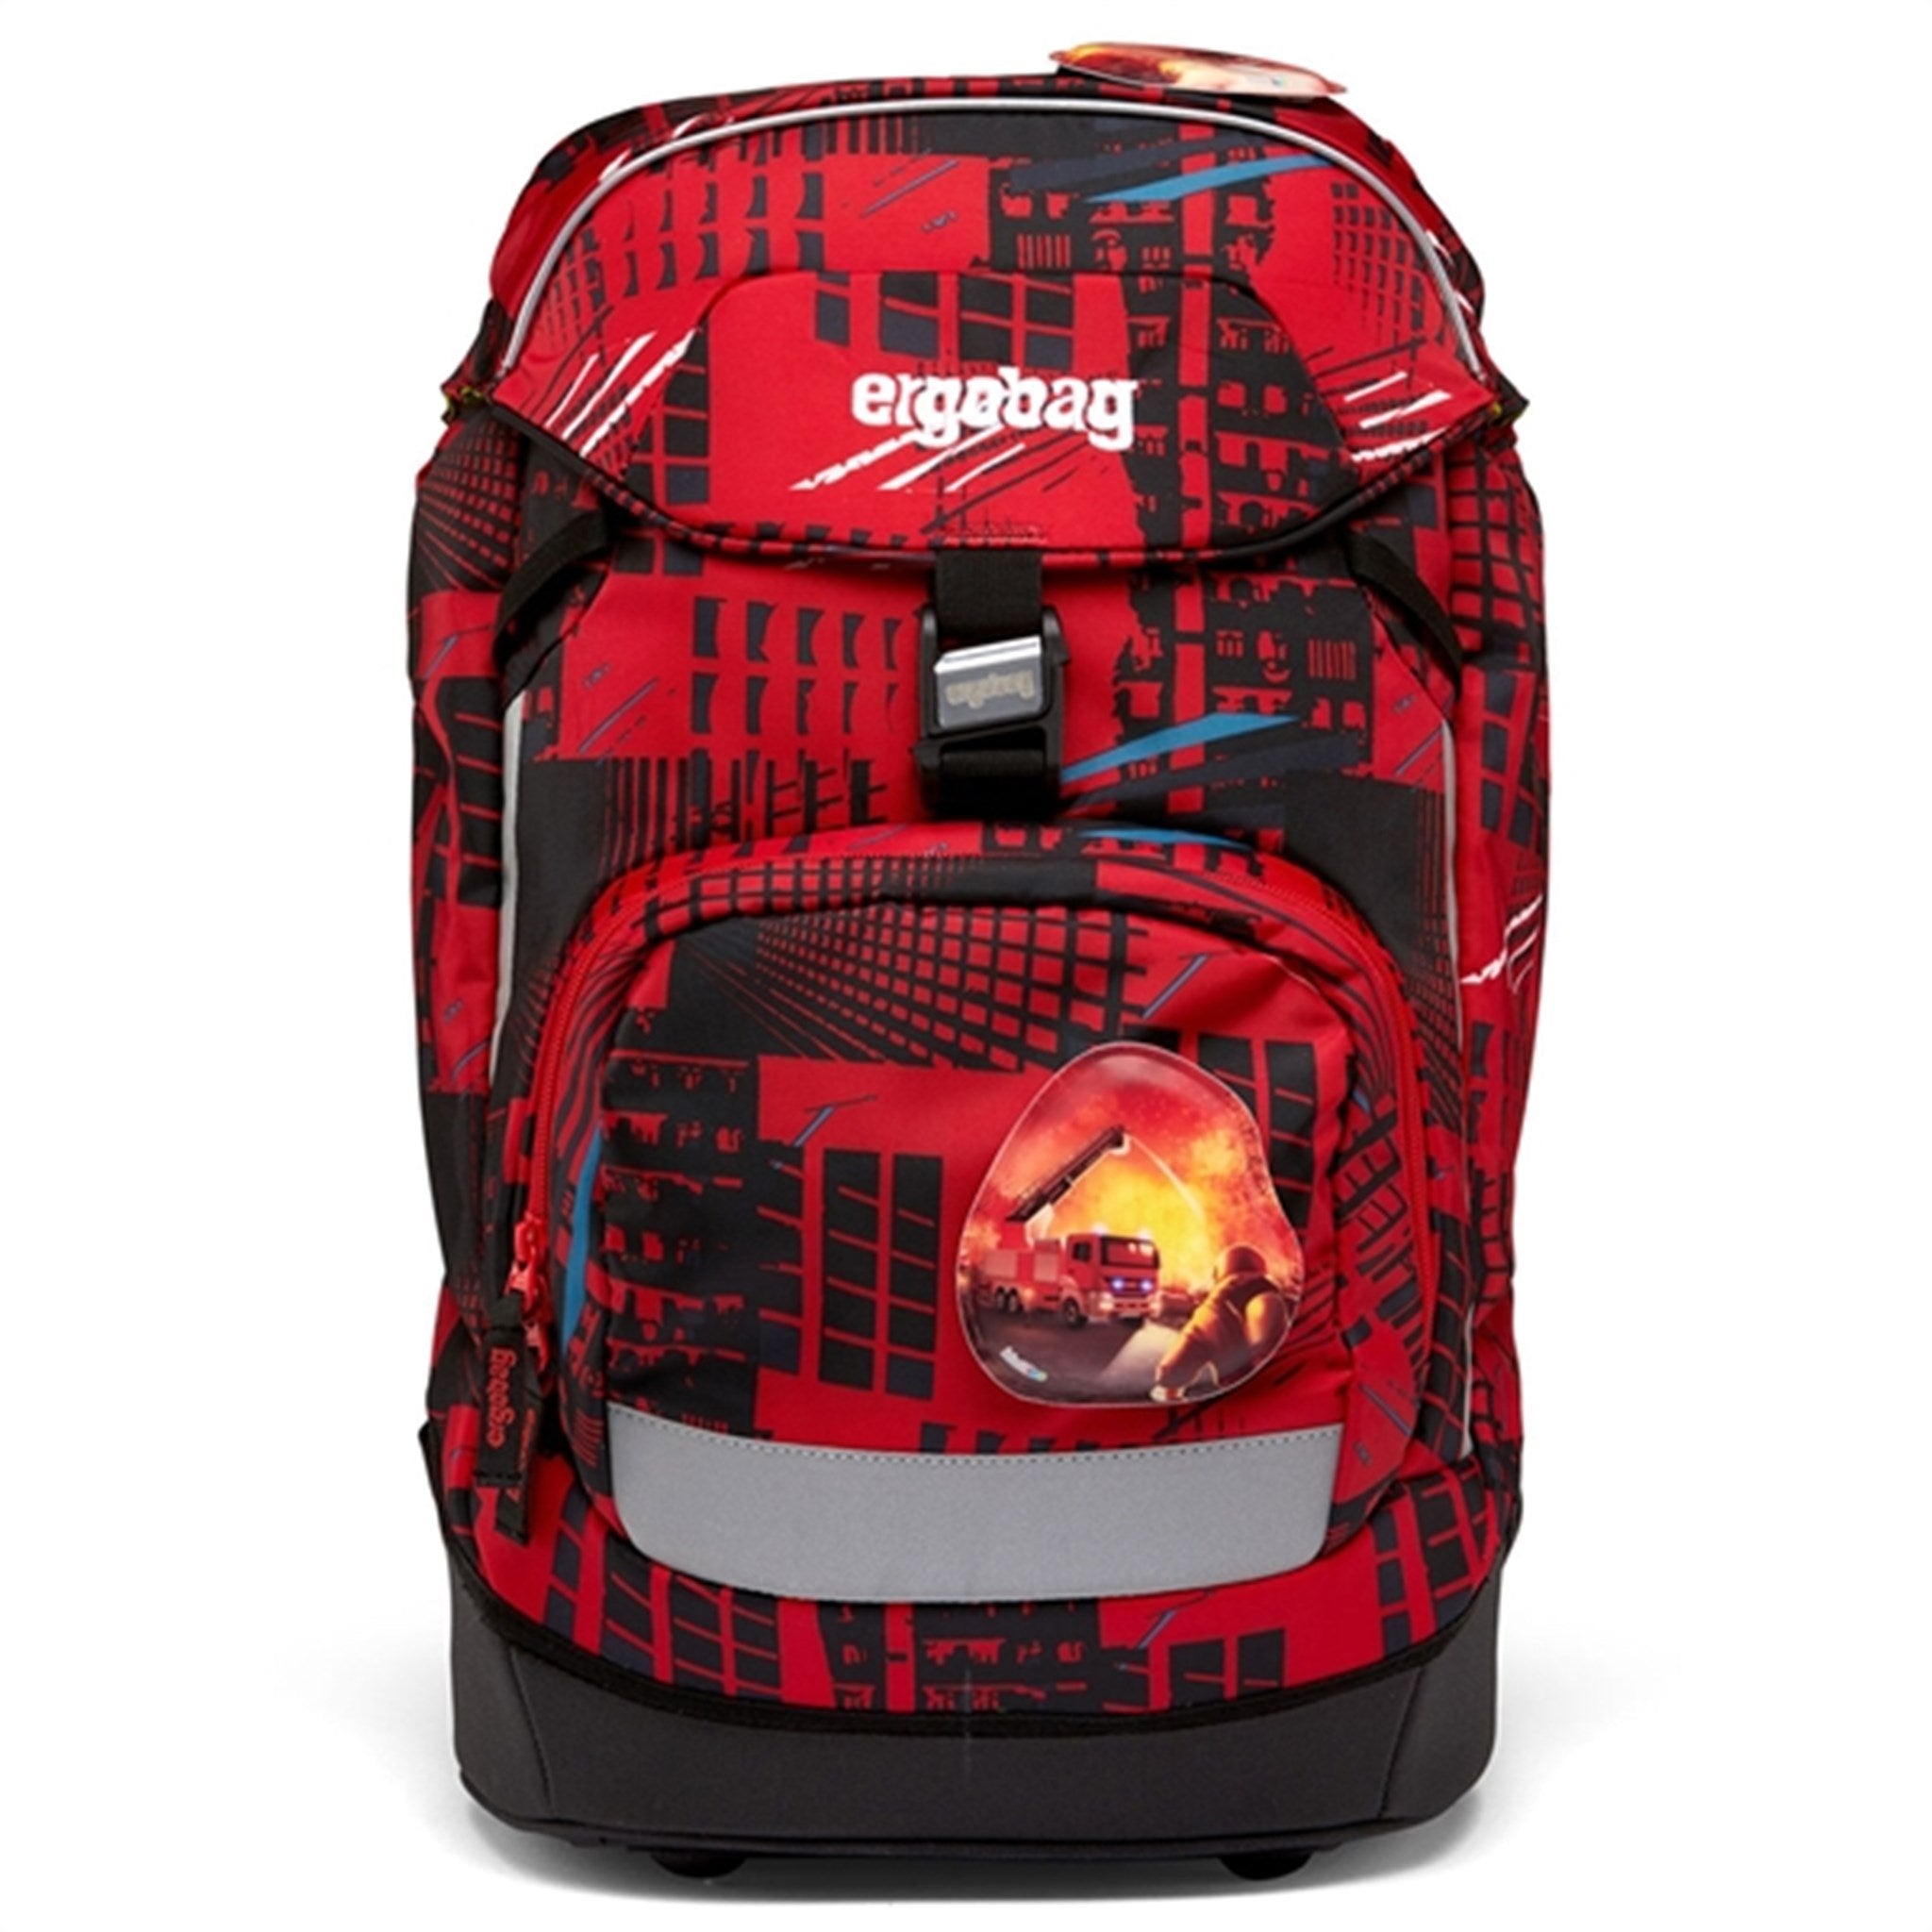 Ergobag School Bag Prime FireBear 7